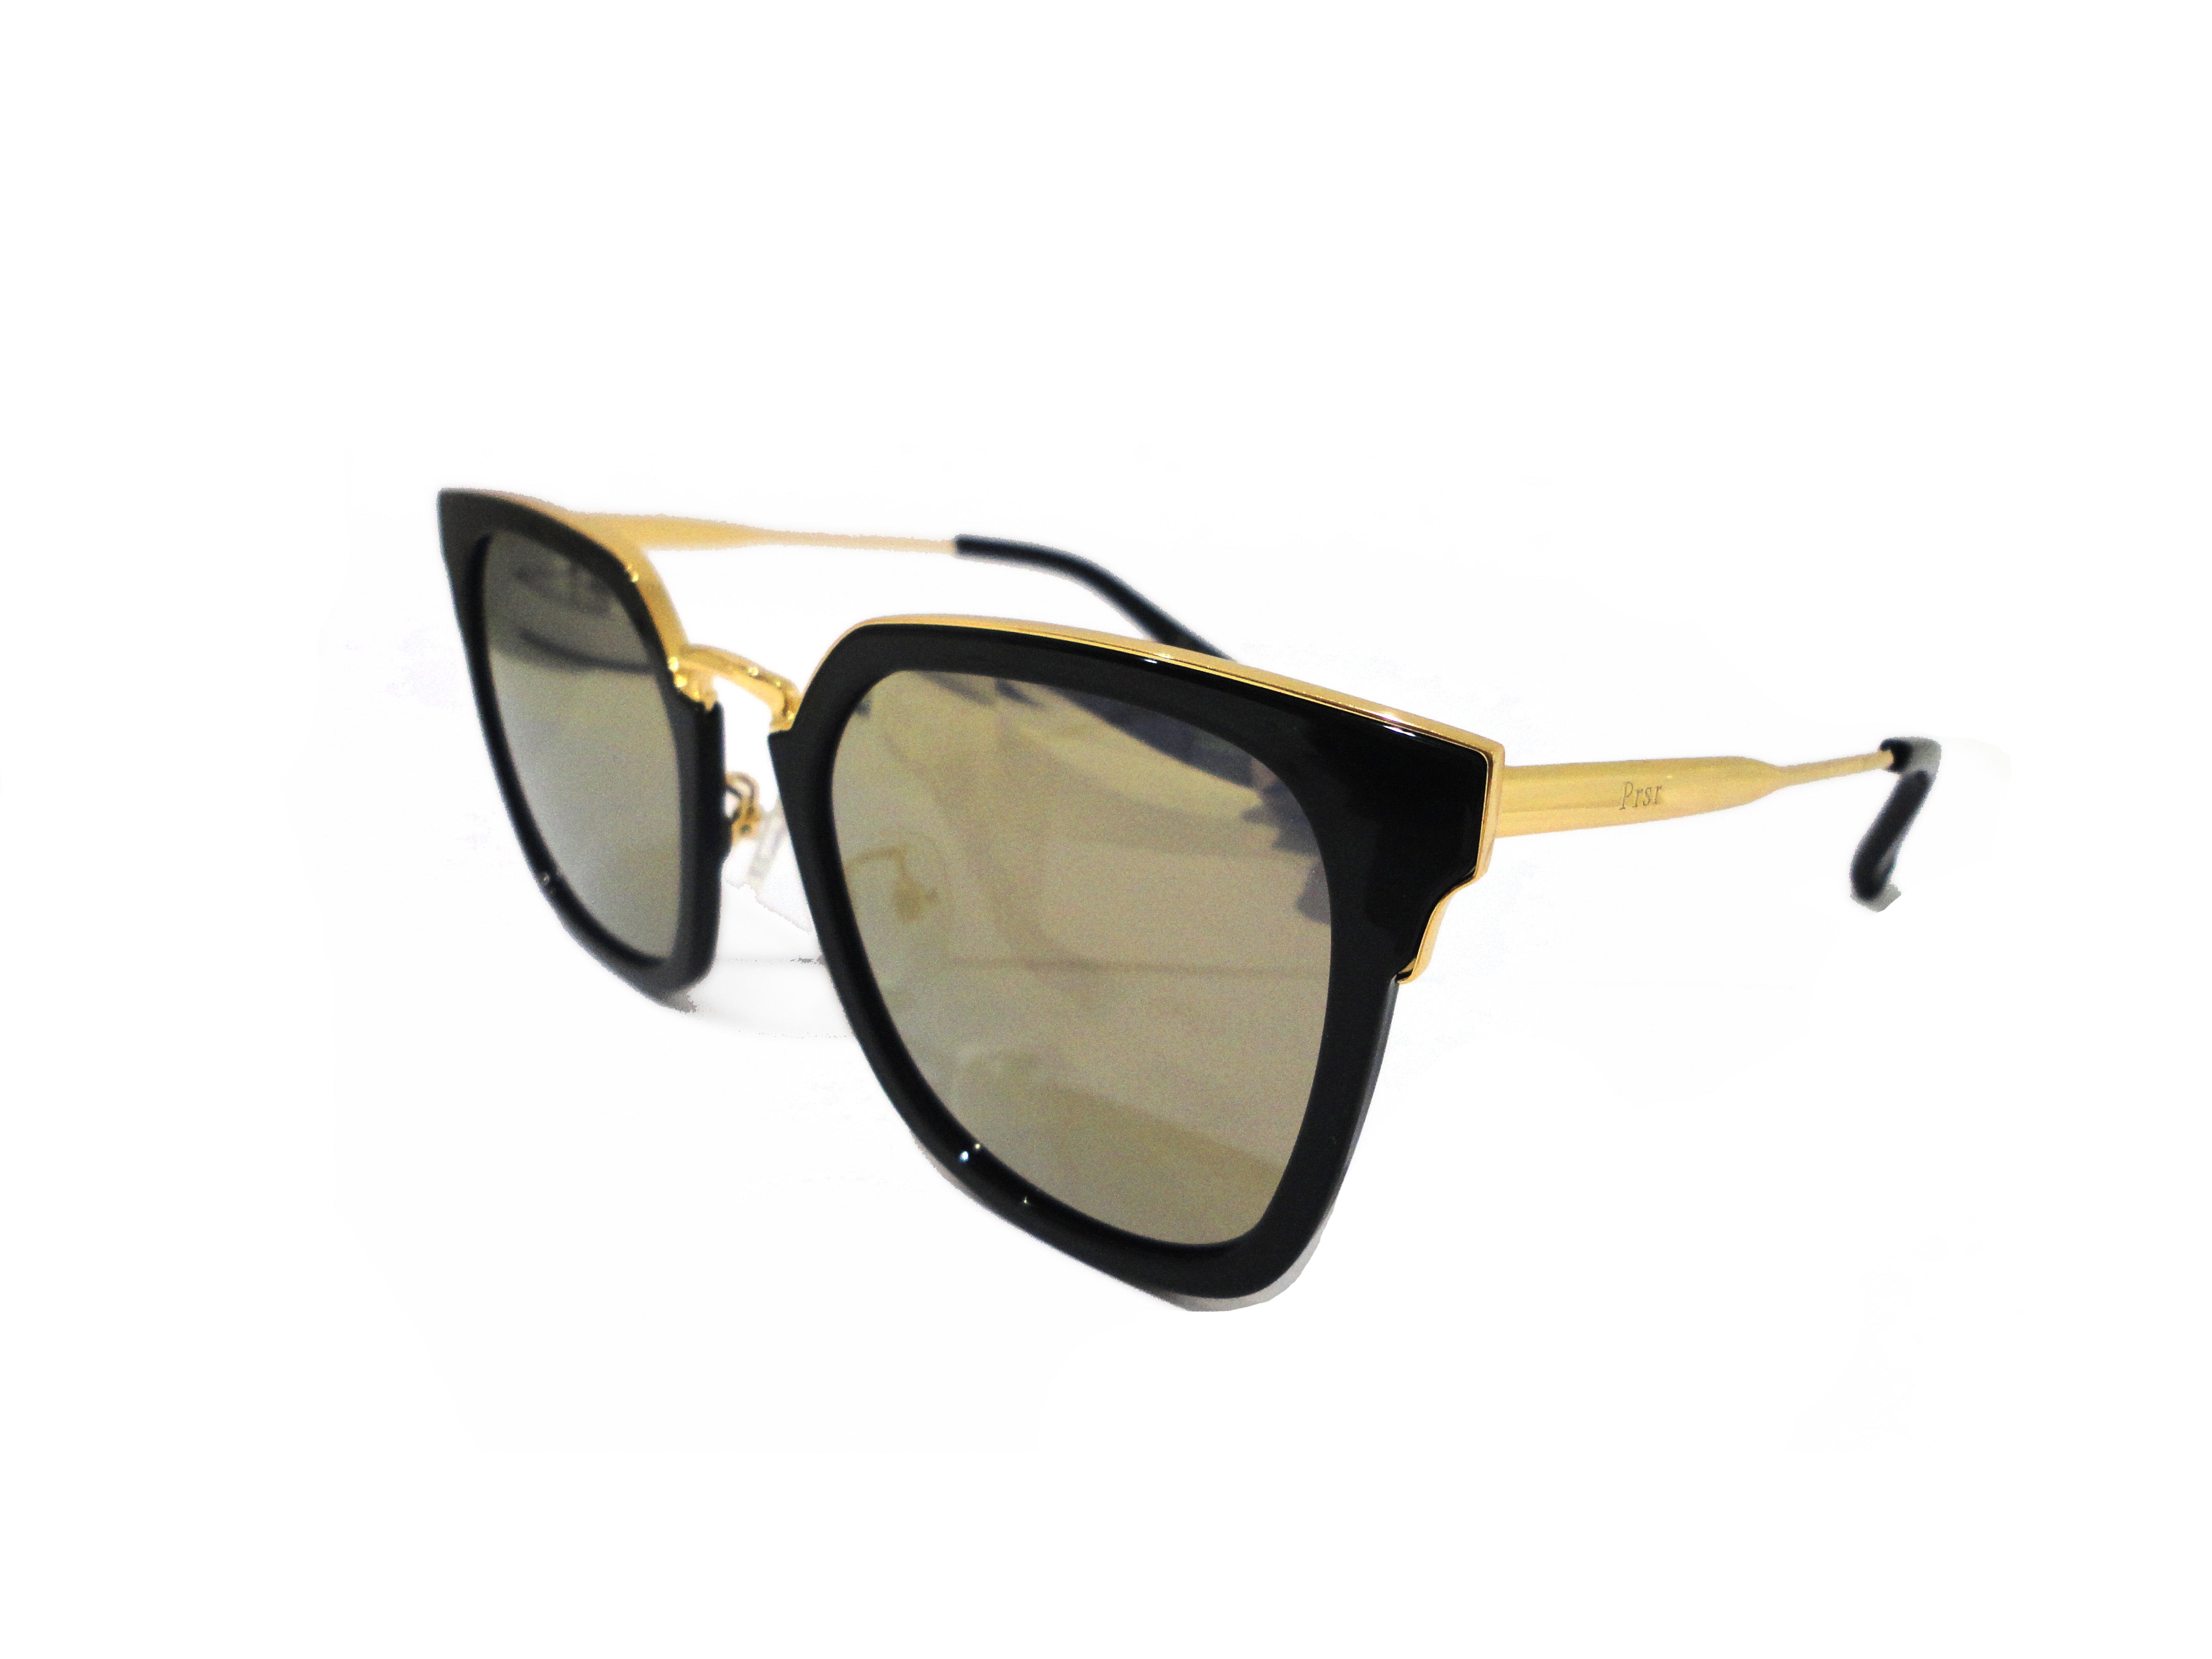 PRSR-T60092 - Women Classic Square Fashion Sunglasses Amber